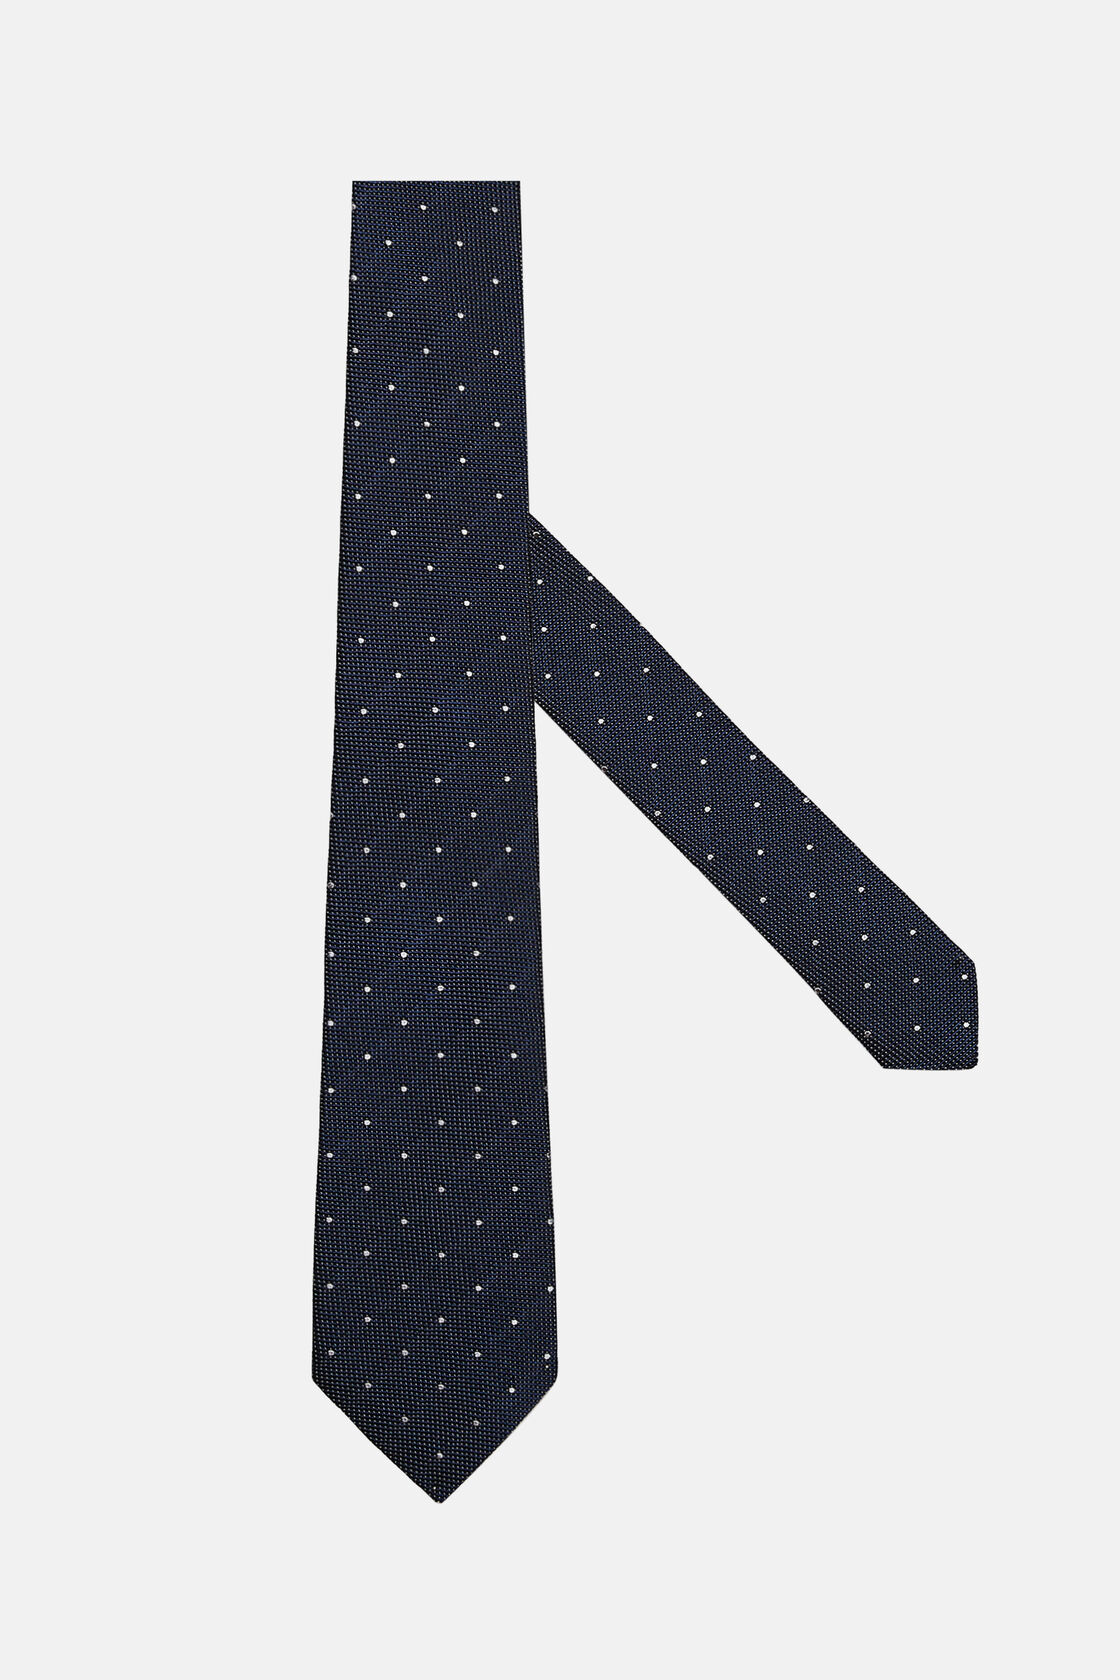 Cravatta Motivo Pois In Seta, Navy, hi-res